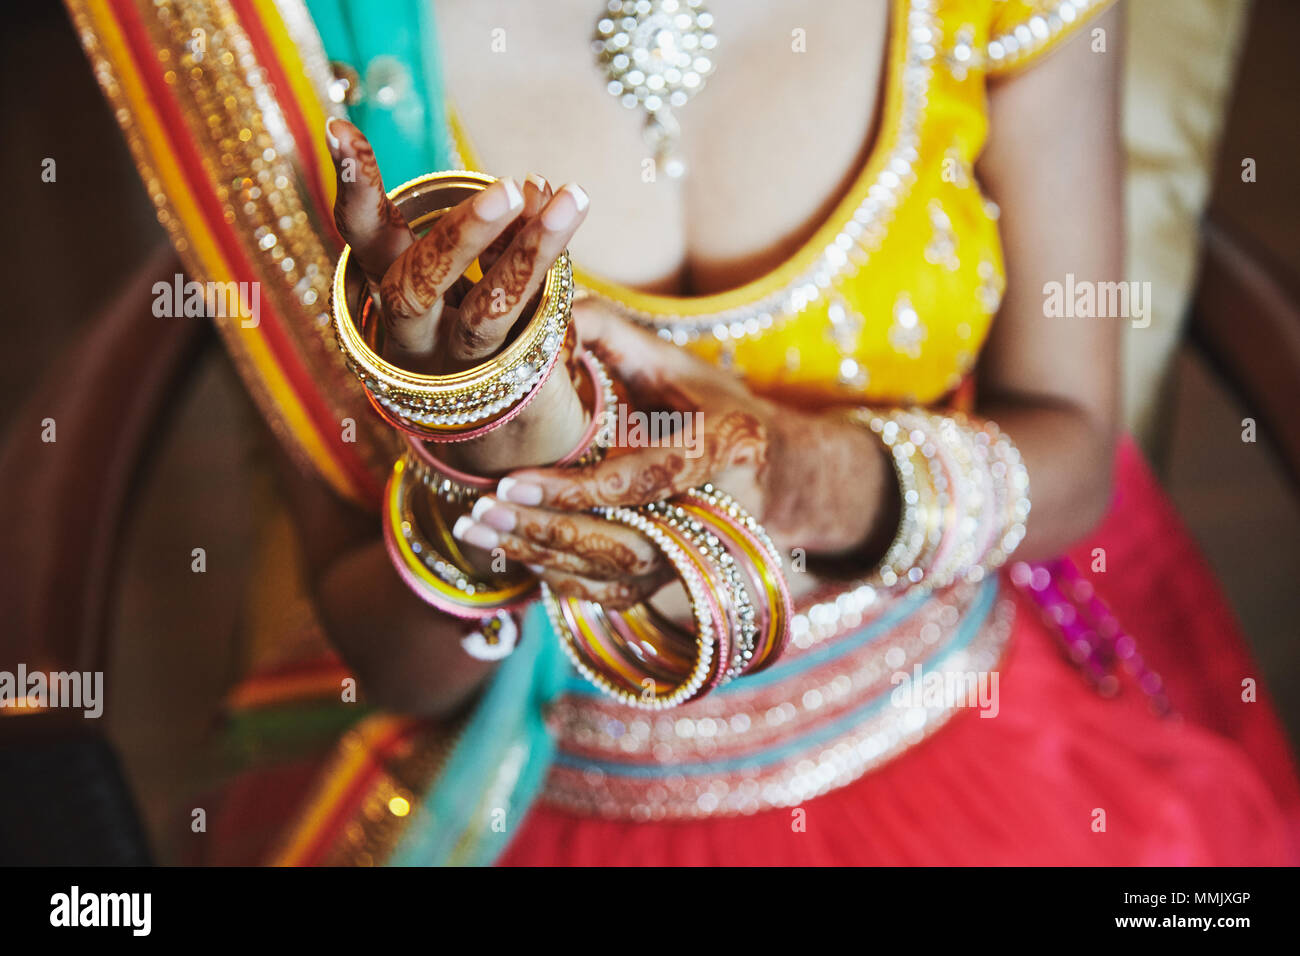 Le gros plan de la mariée indienne avec de beaux saree en blouse jaune et rouge en solde de mettre beaucoup de paillettes bracelets (bangle) sur la main avec mehnd Banque D'Images